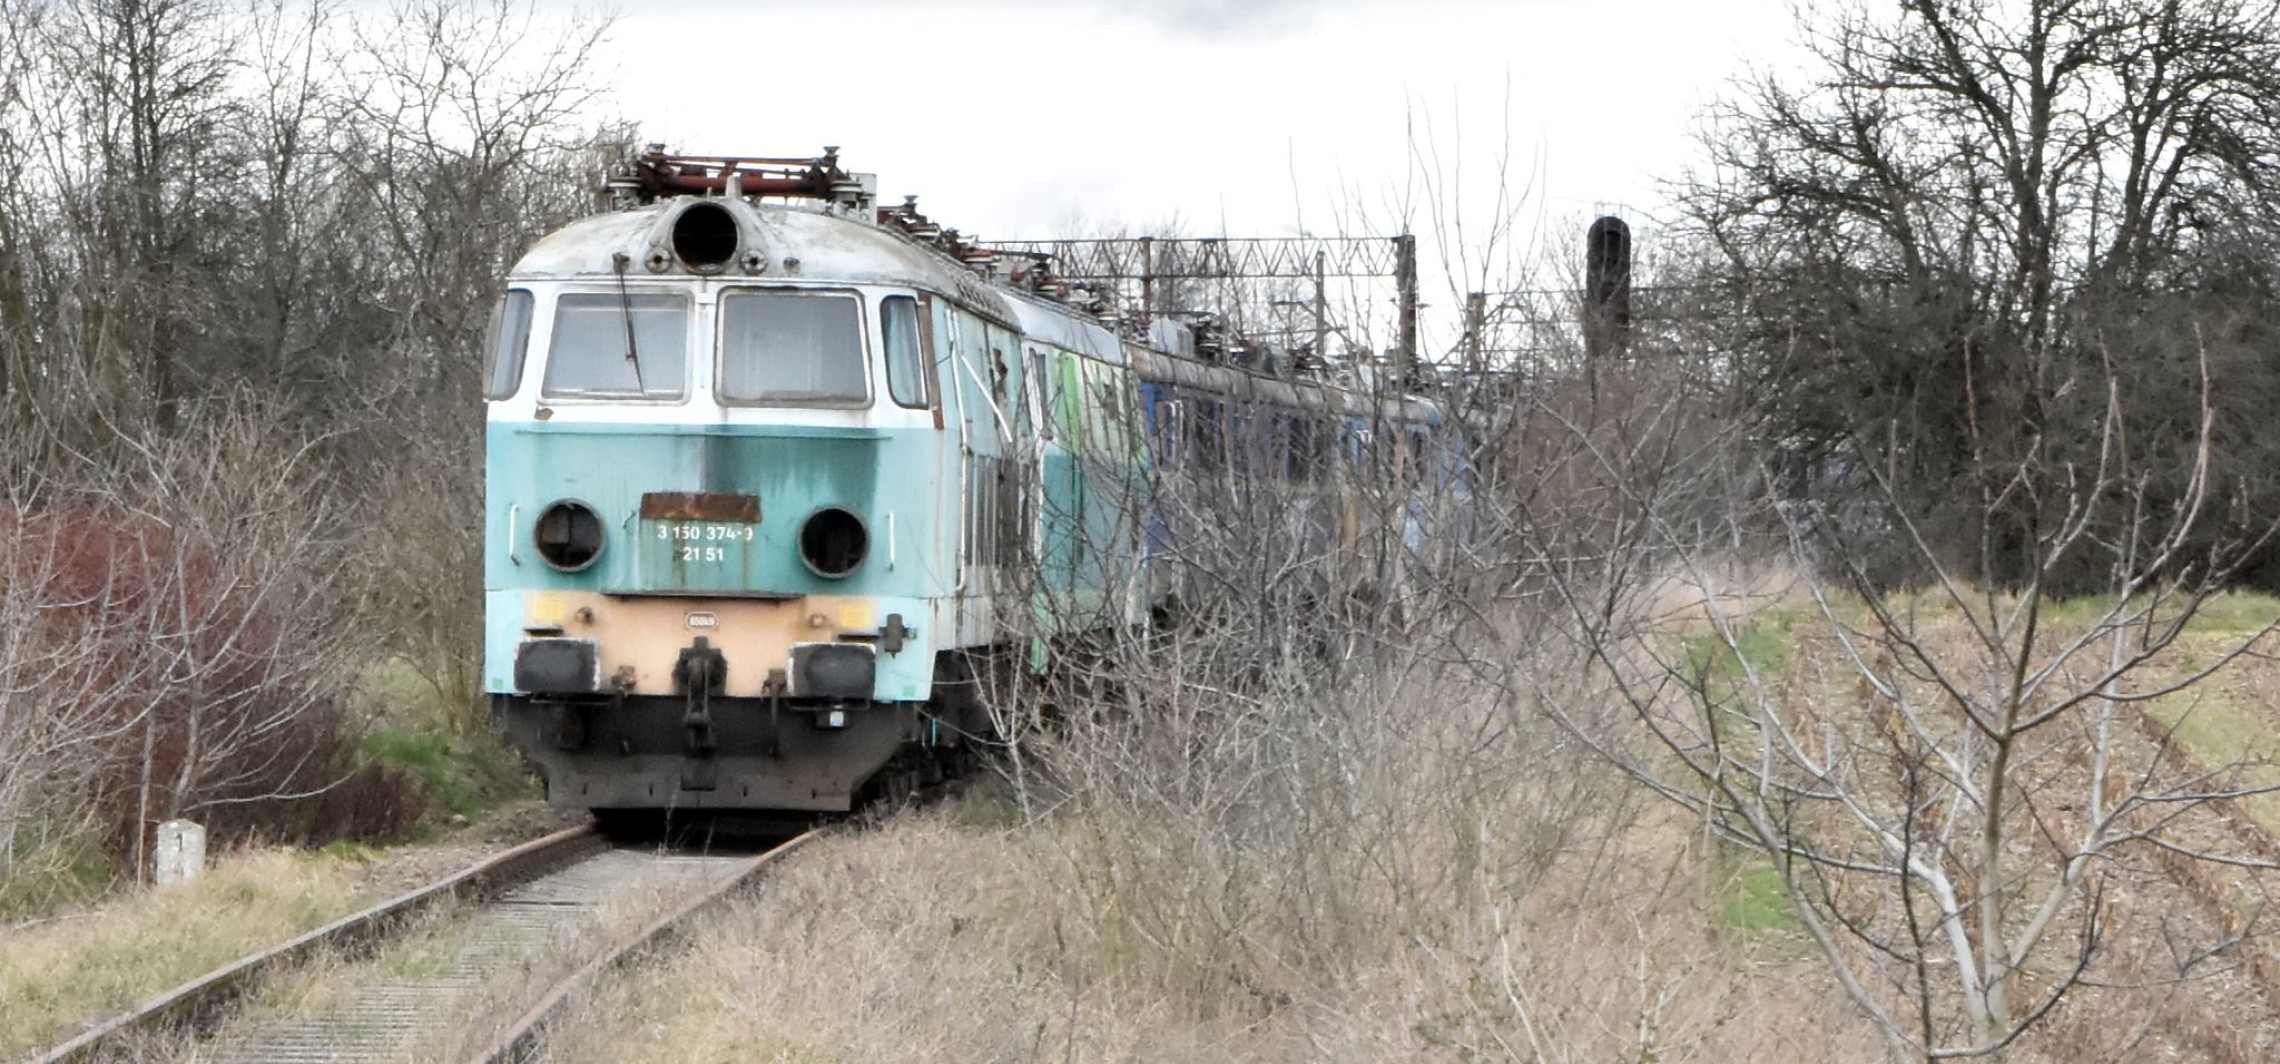 Mogilno - Kradł miedziane przewody z nieeksploatowanej lokomotywy